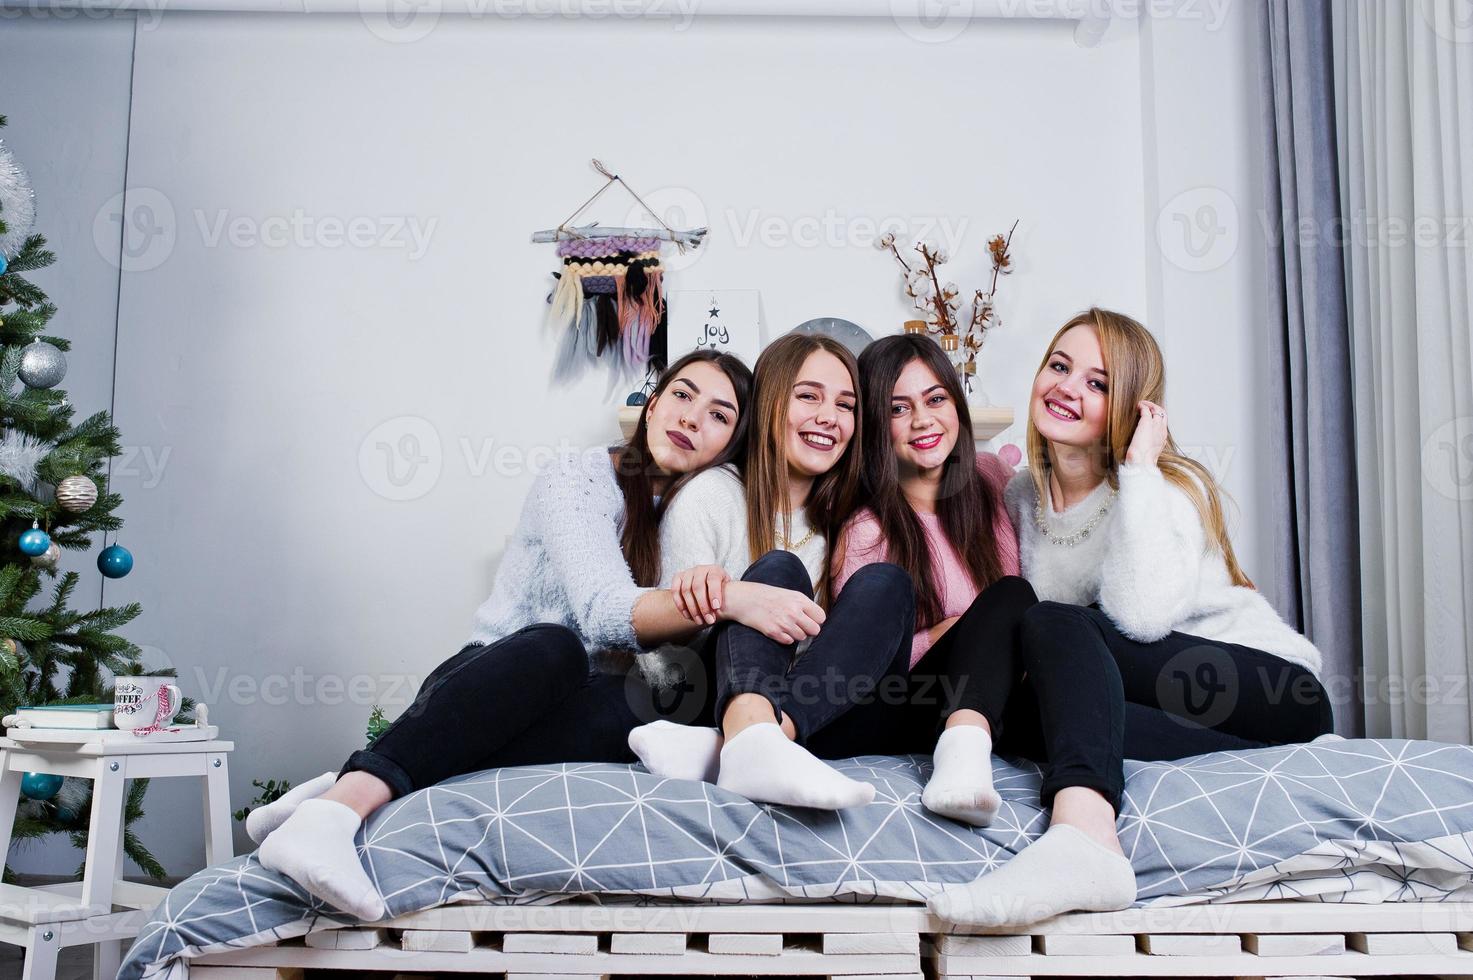 vier schattige vriendenmeisjes dragen warme truien en zwarte broeken op bed in de nieuwjaarskamer in de studio. foto